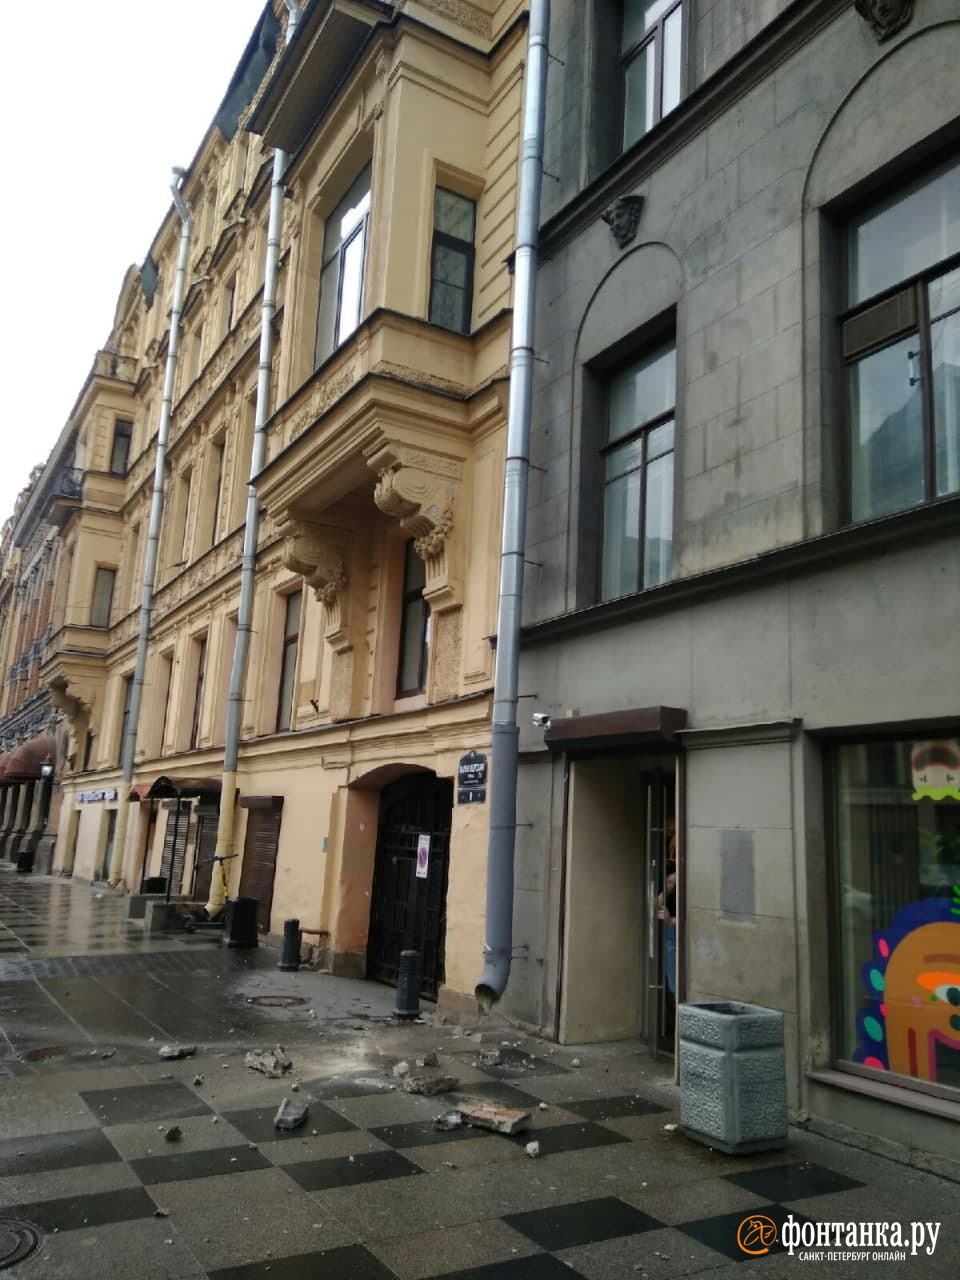 Дореволюционный дом в центре Петербурга посыпался на тротуар. Штукатурку не удержал карниз